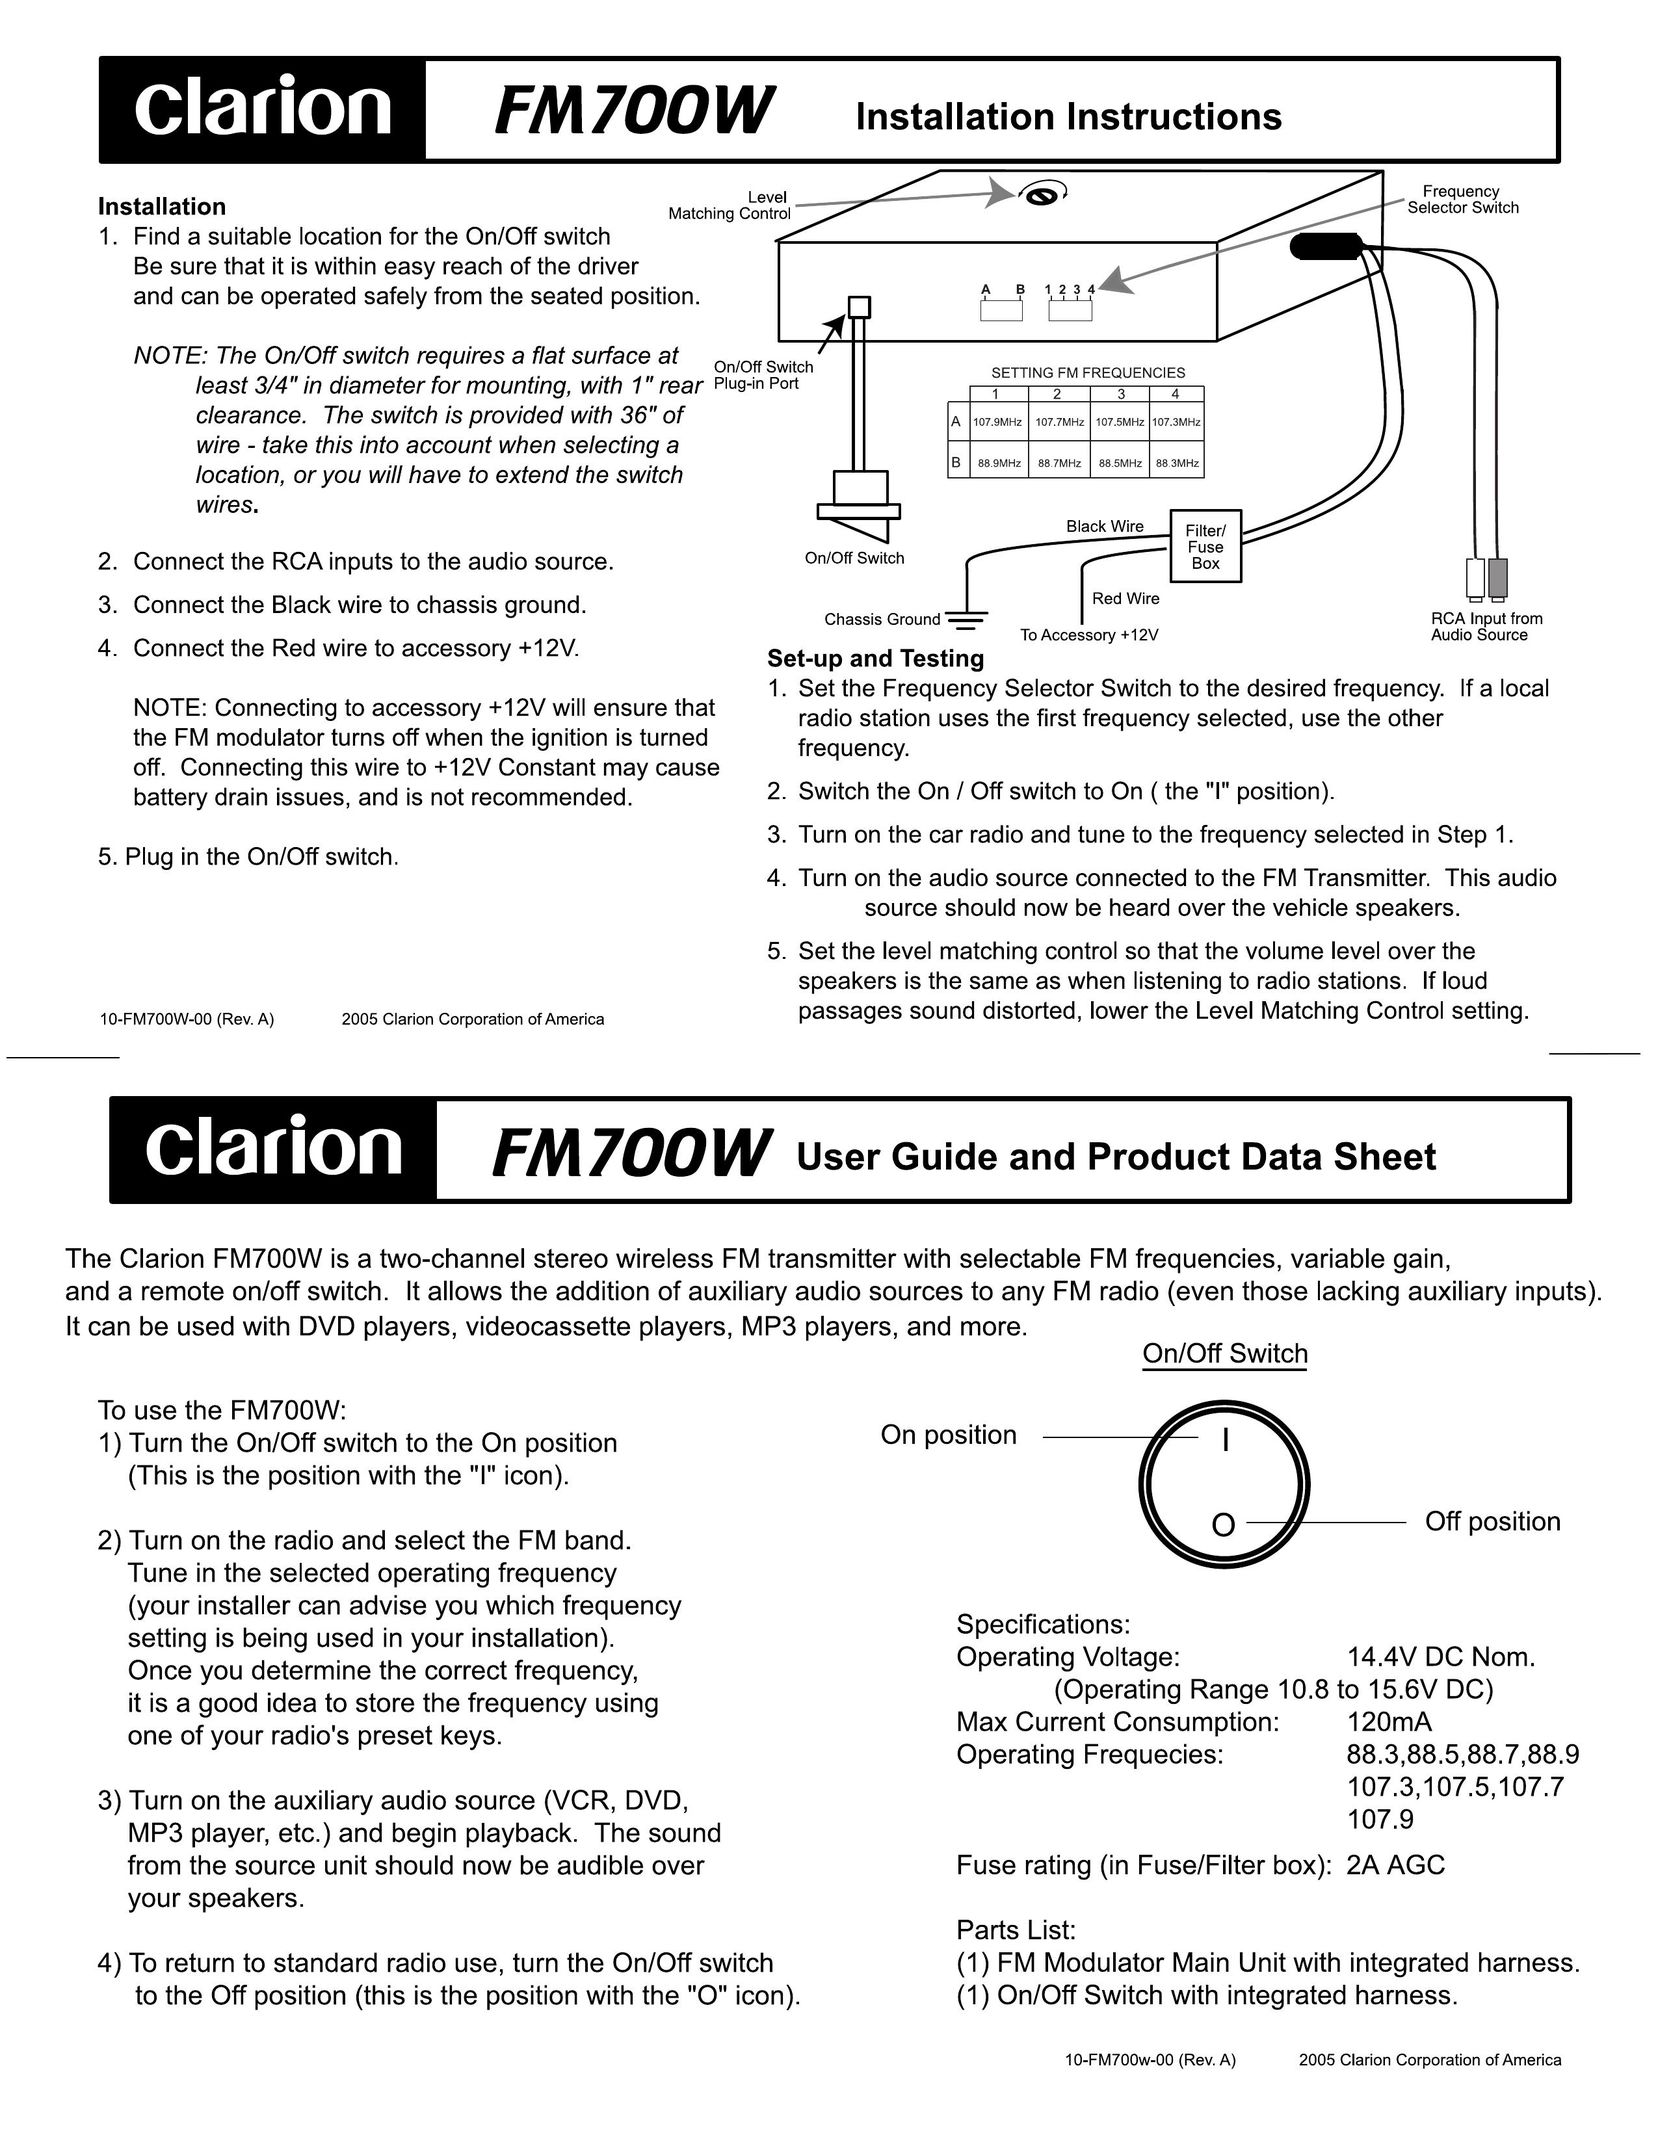 Clarion FM700W Satellite Radio User Manual